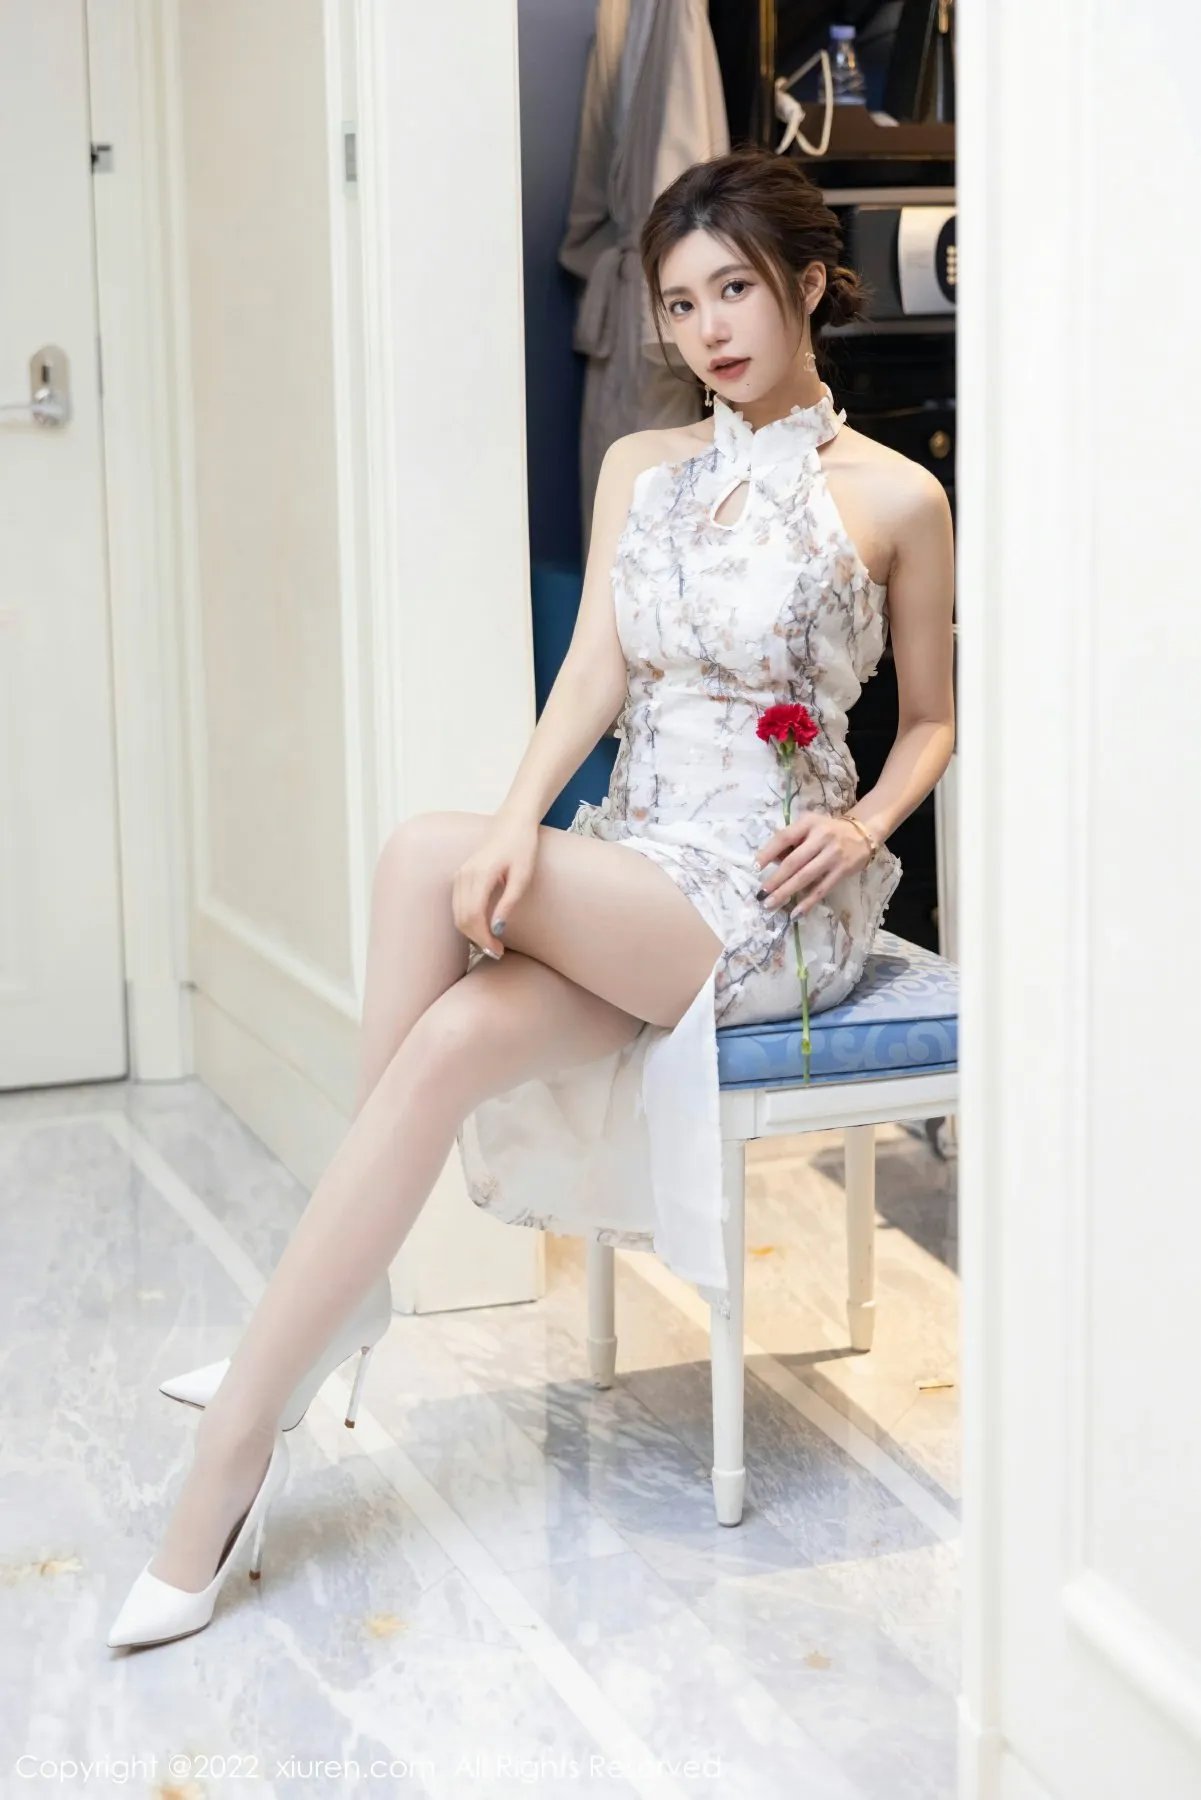 XIUREN(秀人网) No.5713 Good-looking & Extraordinary Asian Mature Princess 绮里嘉ula